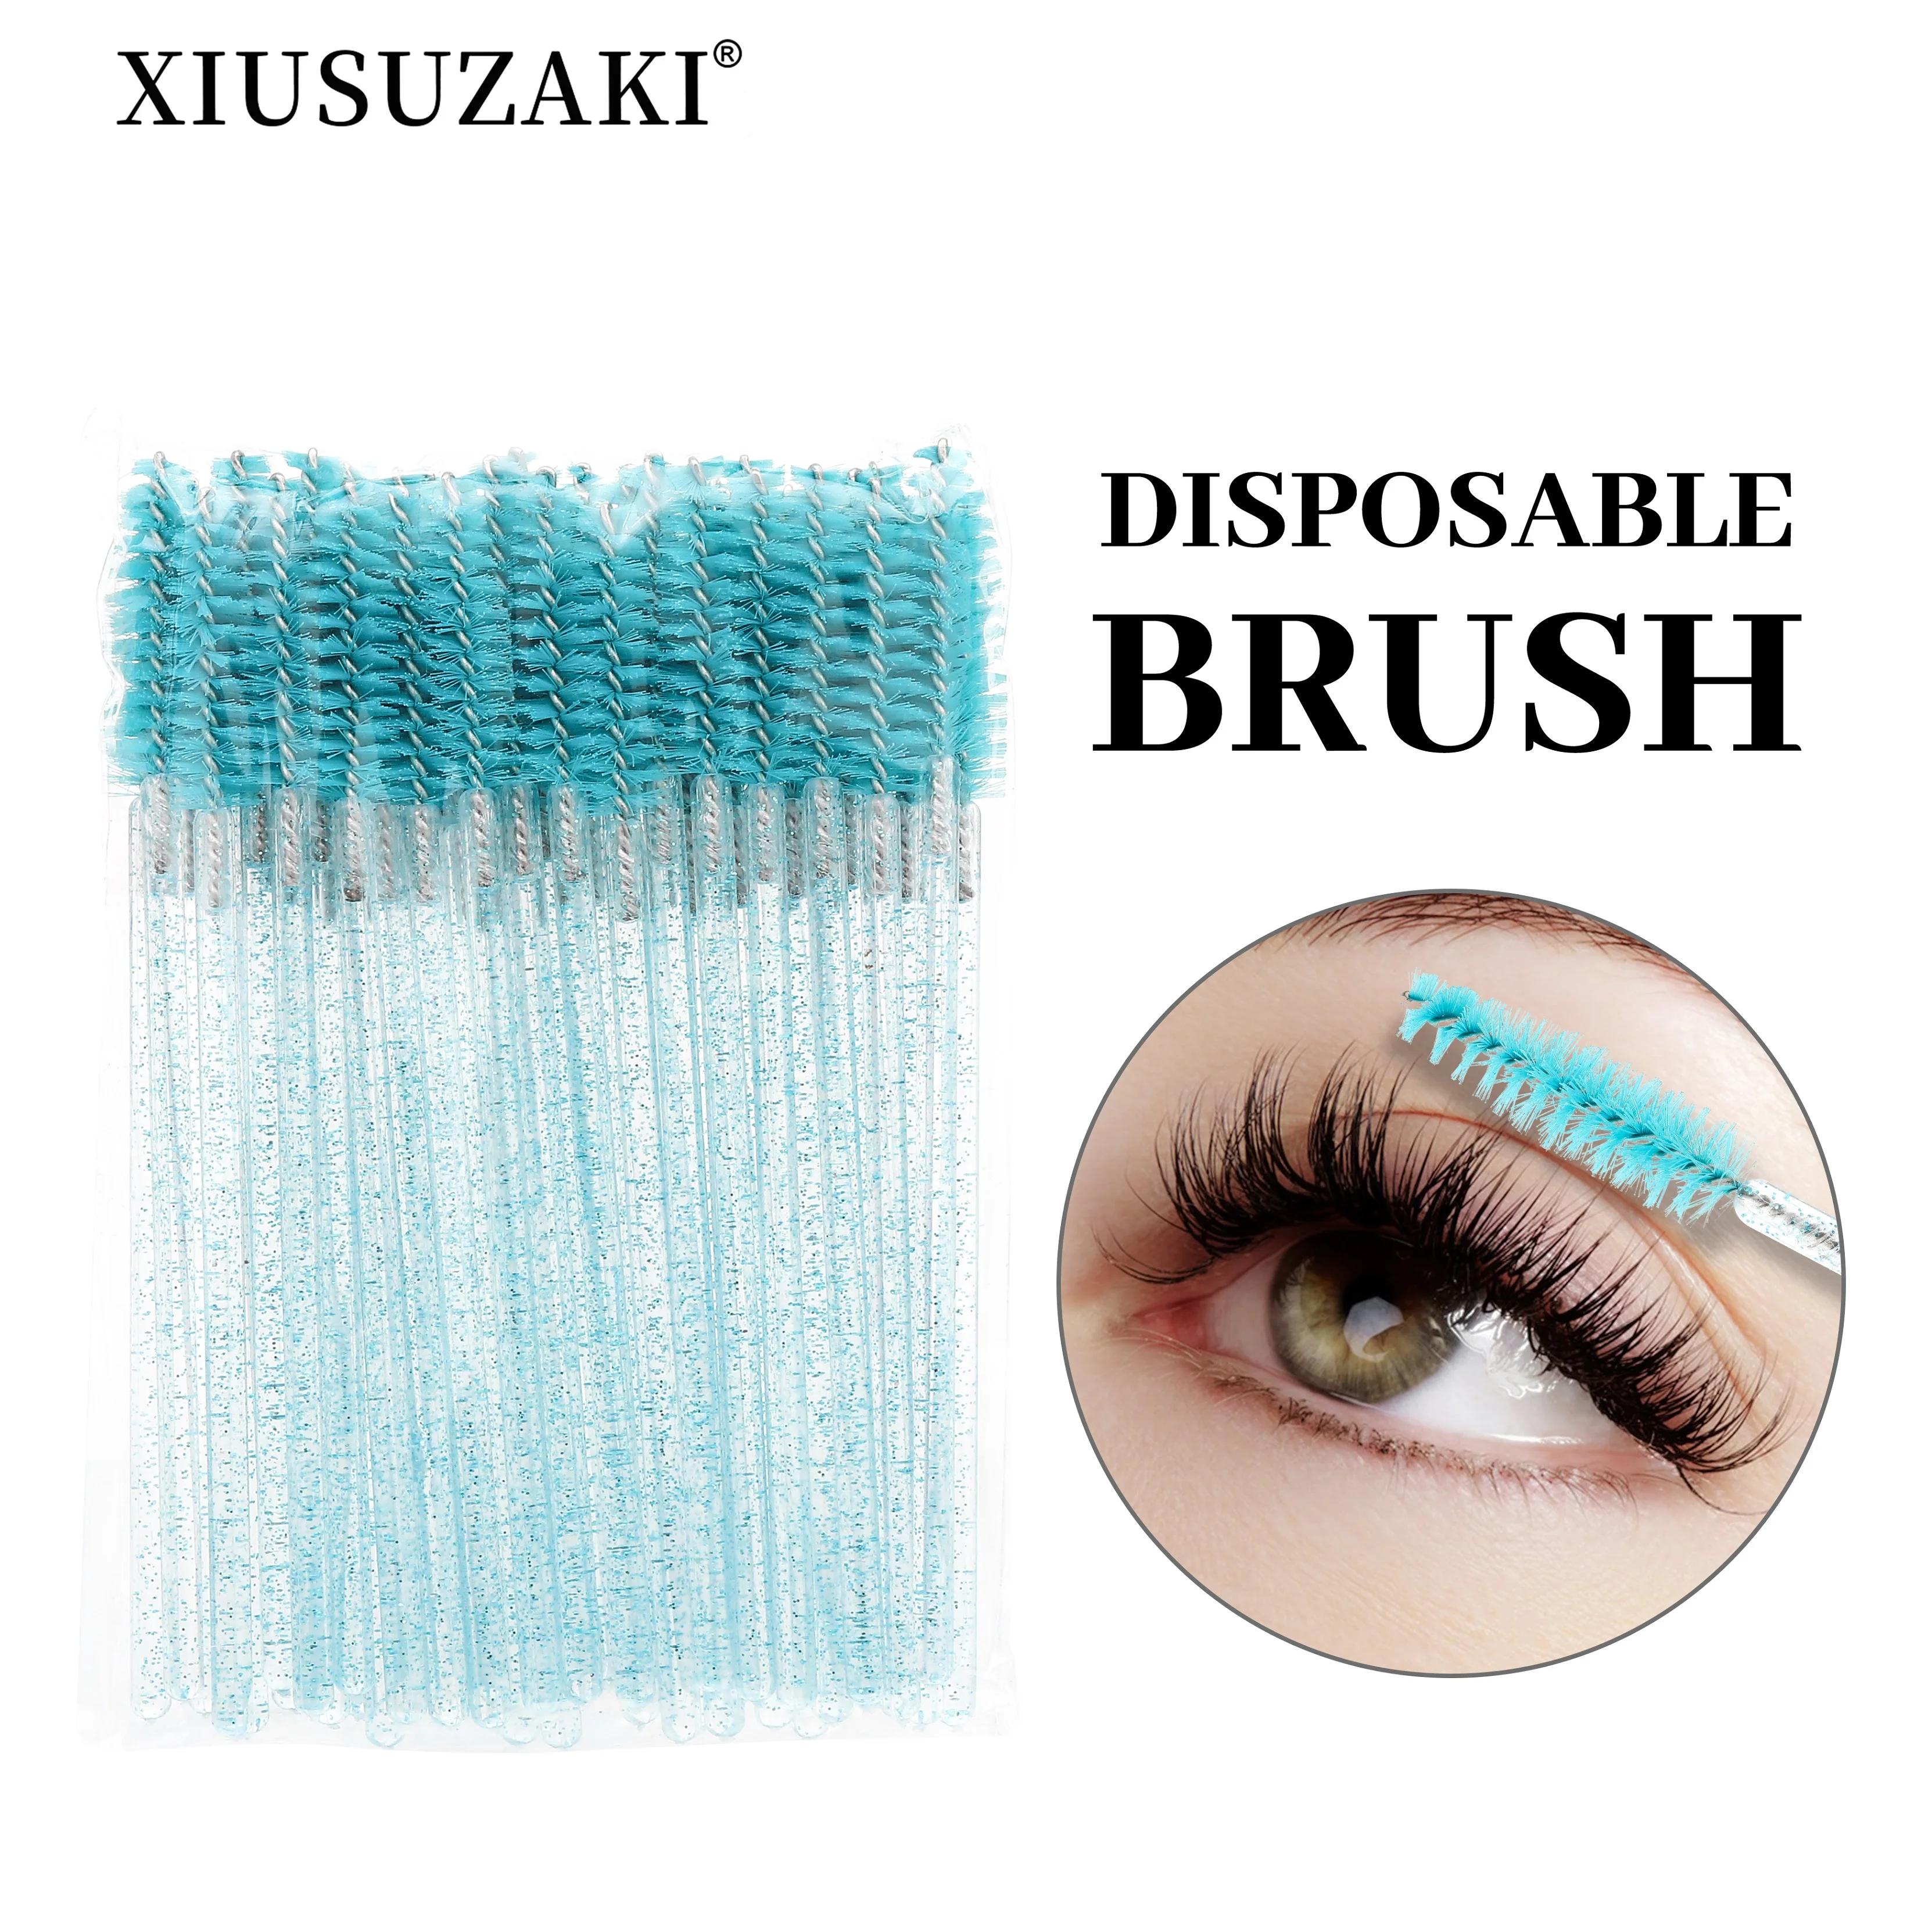 XIUSUZAKI 100pcs/lot Mascara Eyelash Make Up Brush Disposable Mascara Wand for eyelash extension